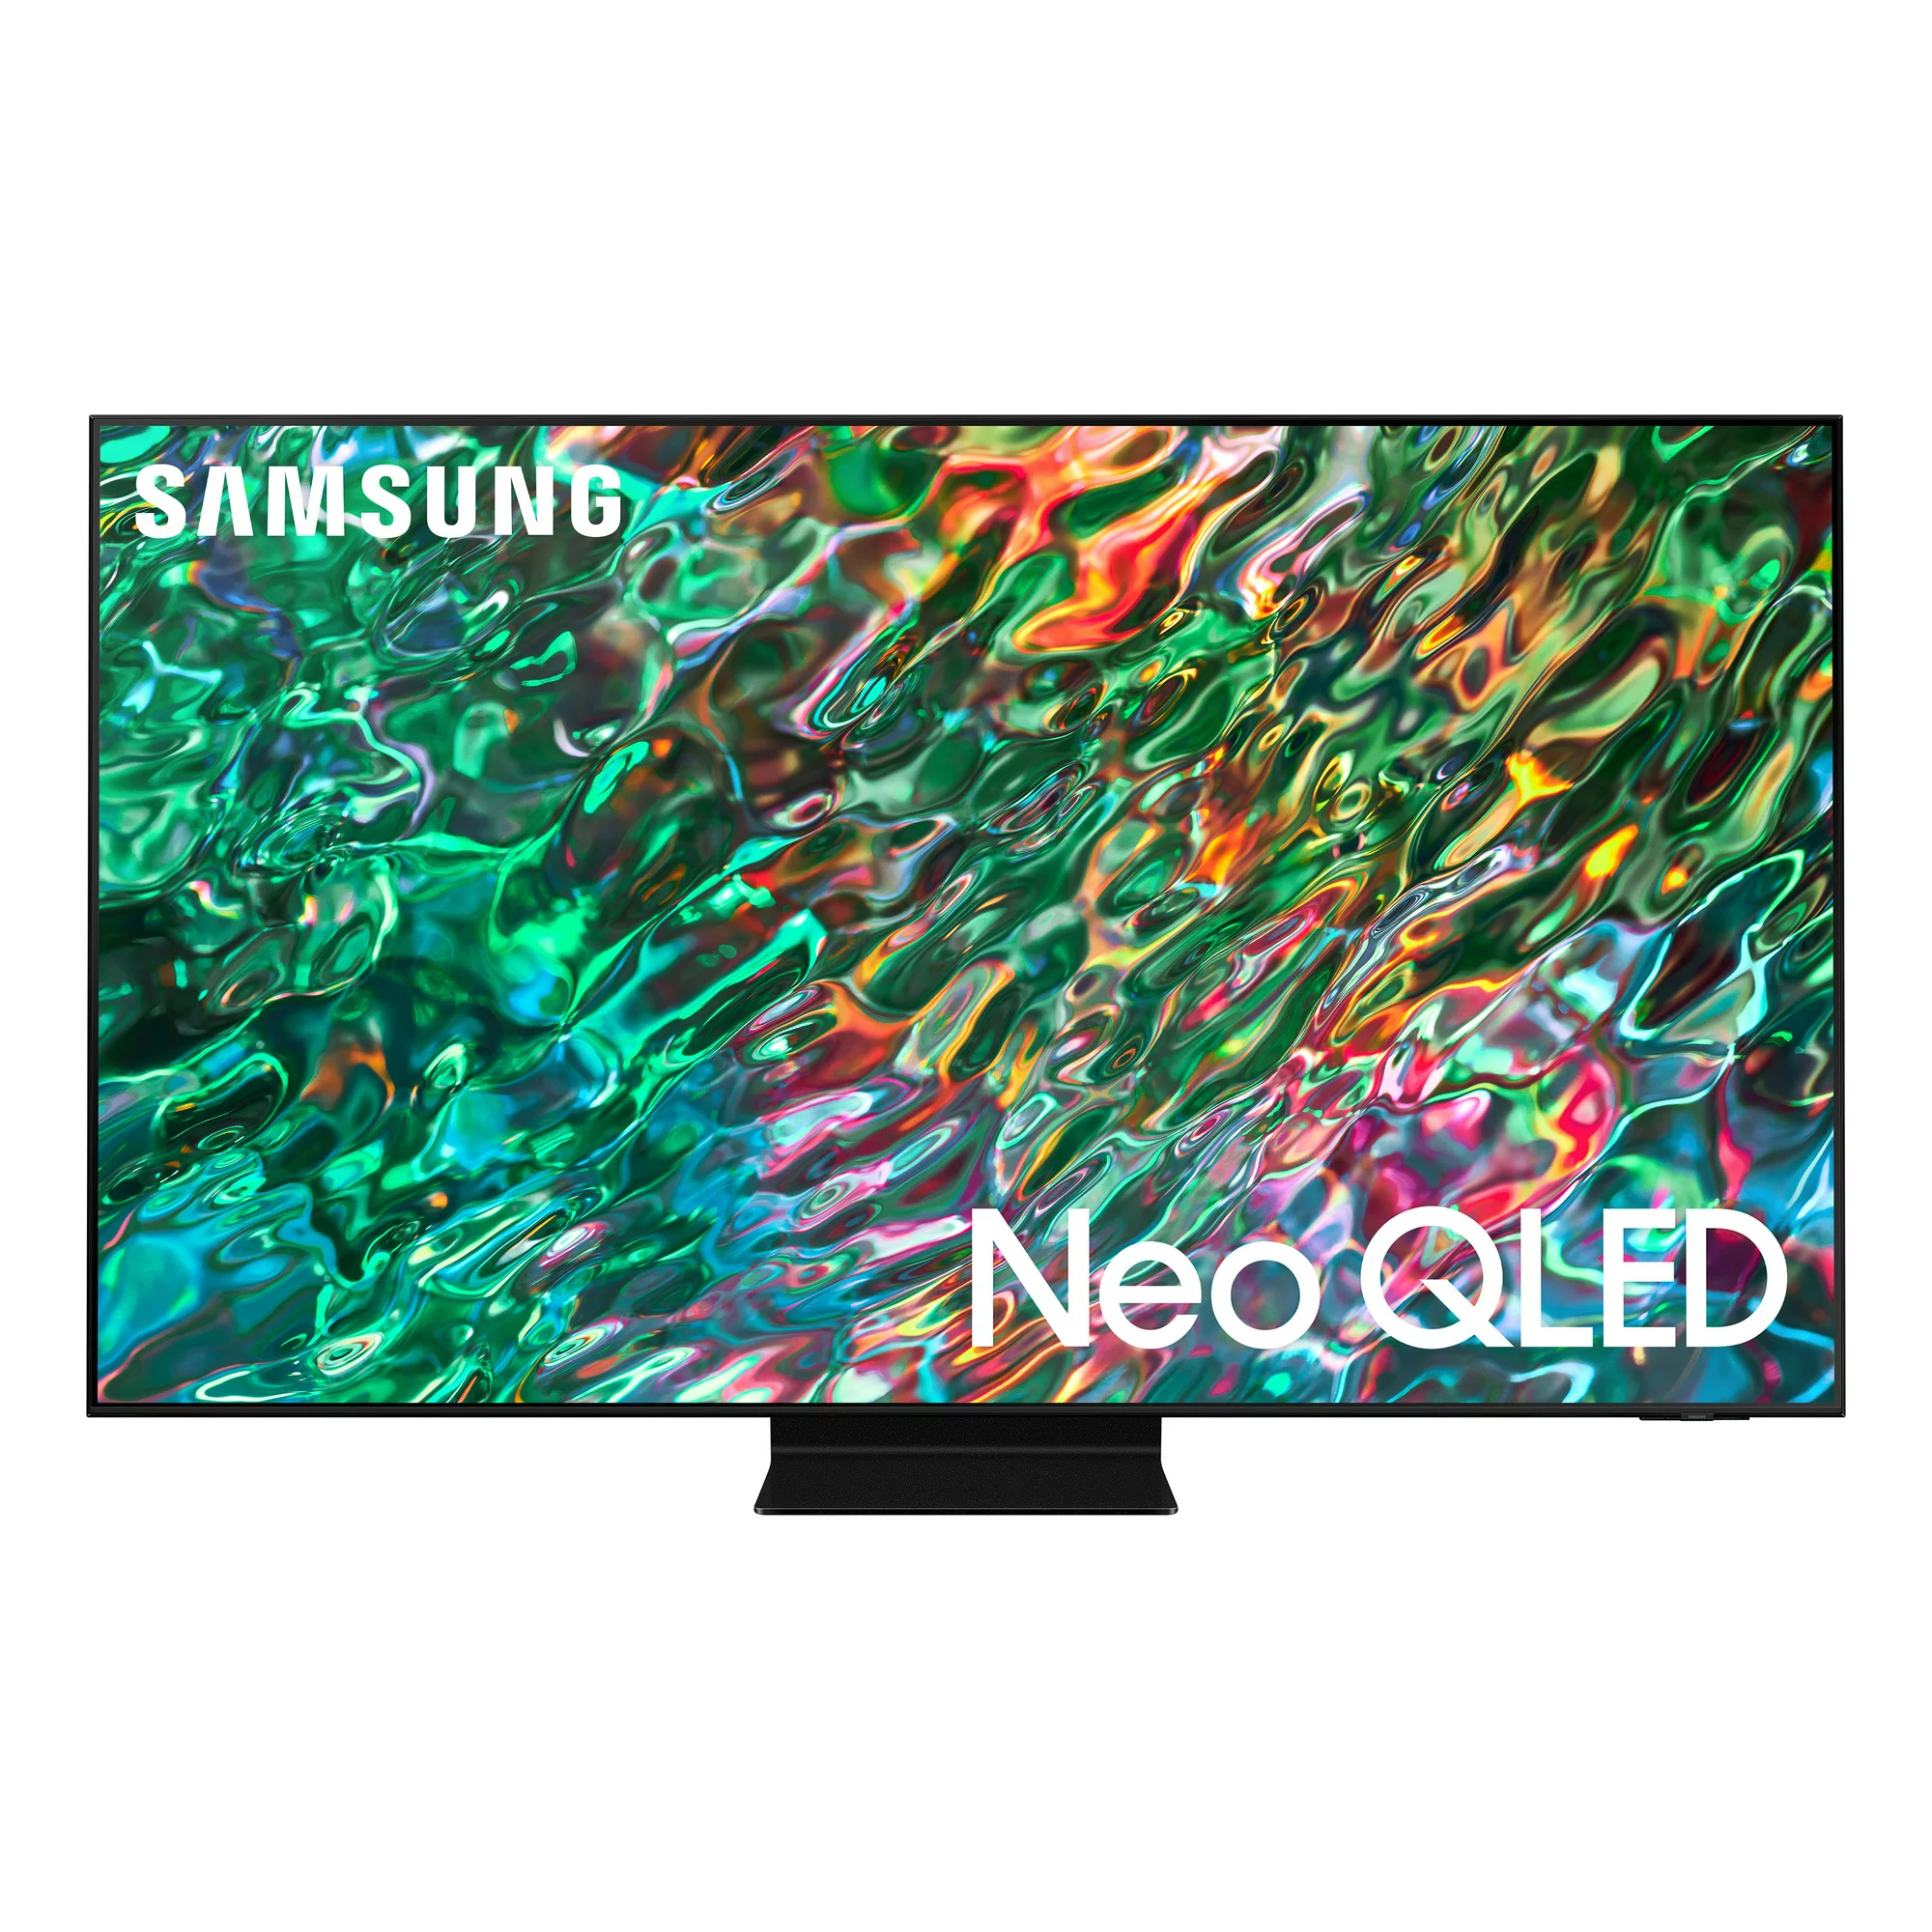 Samsung QN90B 85 inch TV